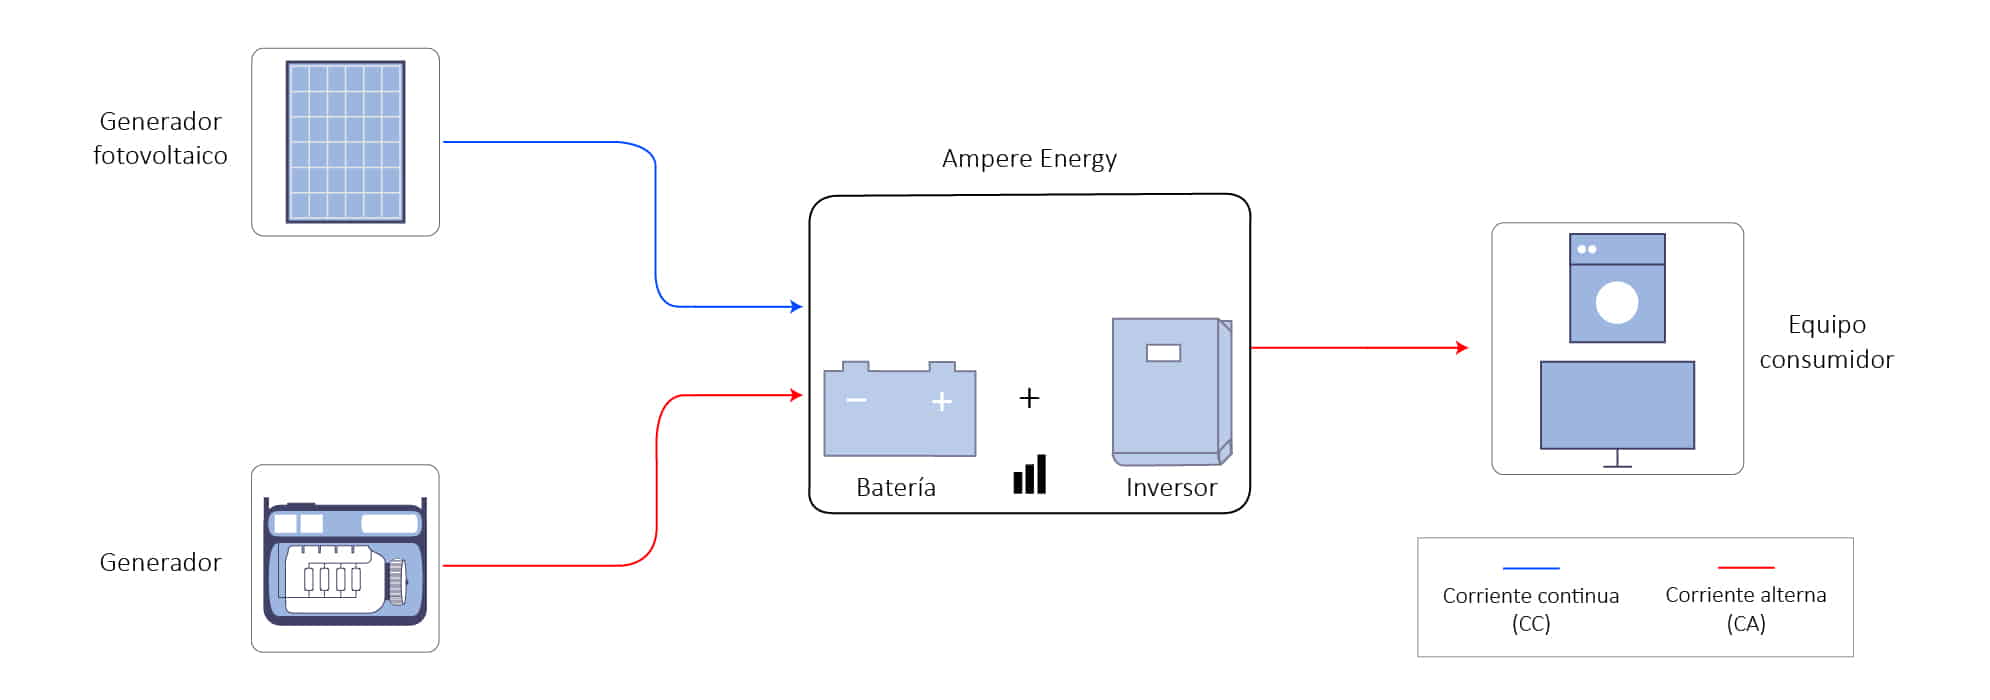 Sistema Ampere Energy